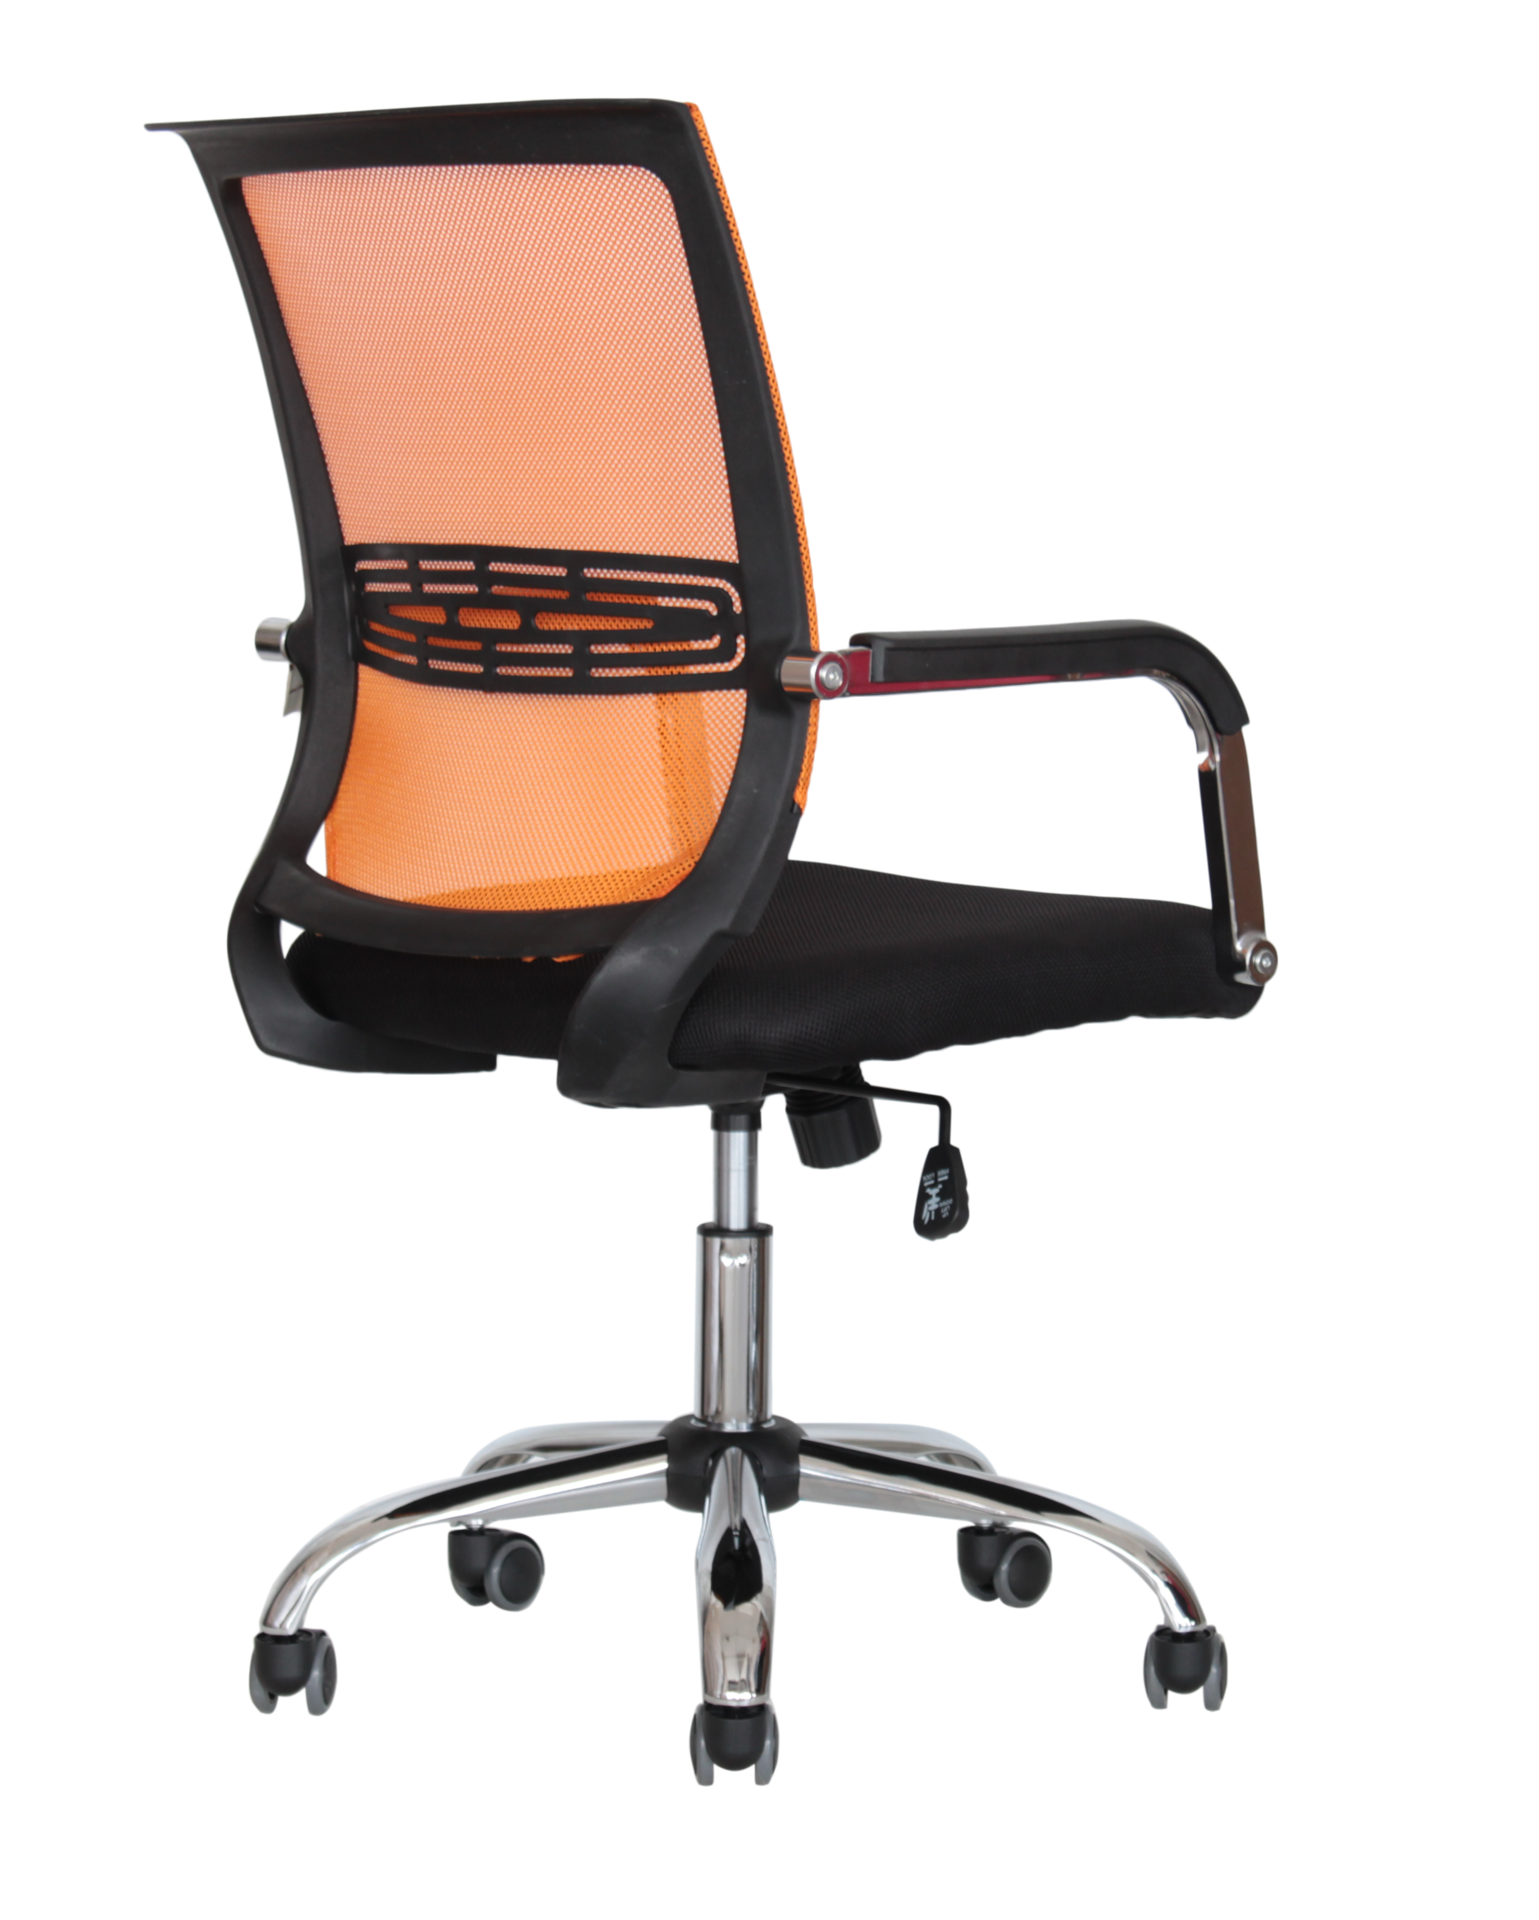 CTK-XH-6057 Ch. Офисное кресло Antares спинка сетка. CTK-XH-6156 Ch. Кресло "том т682 спинка TW" оранж,сиденье черное, , шт.